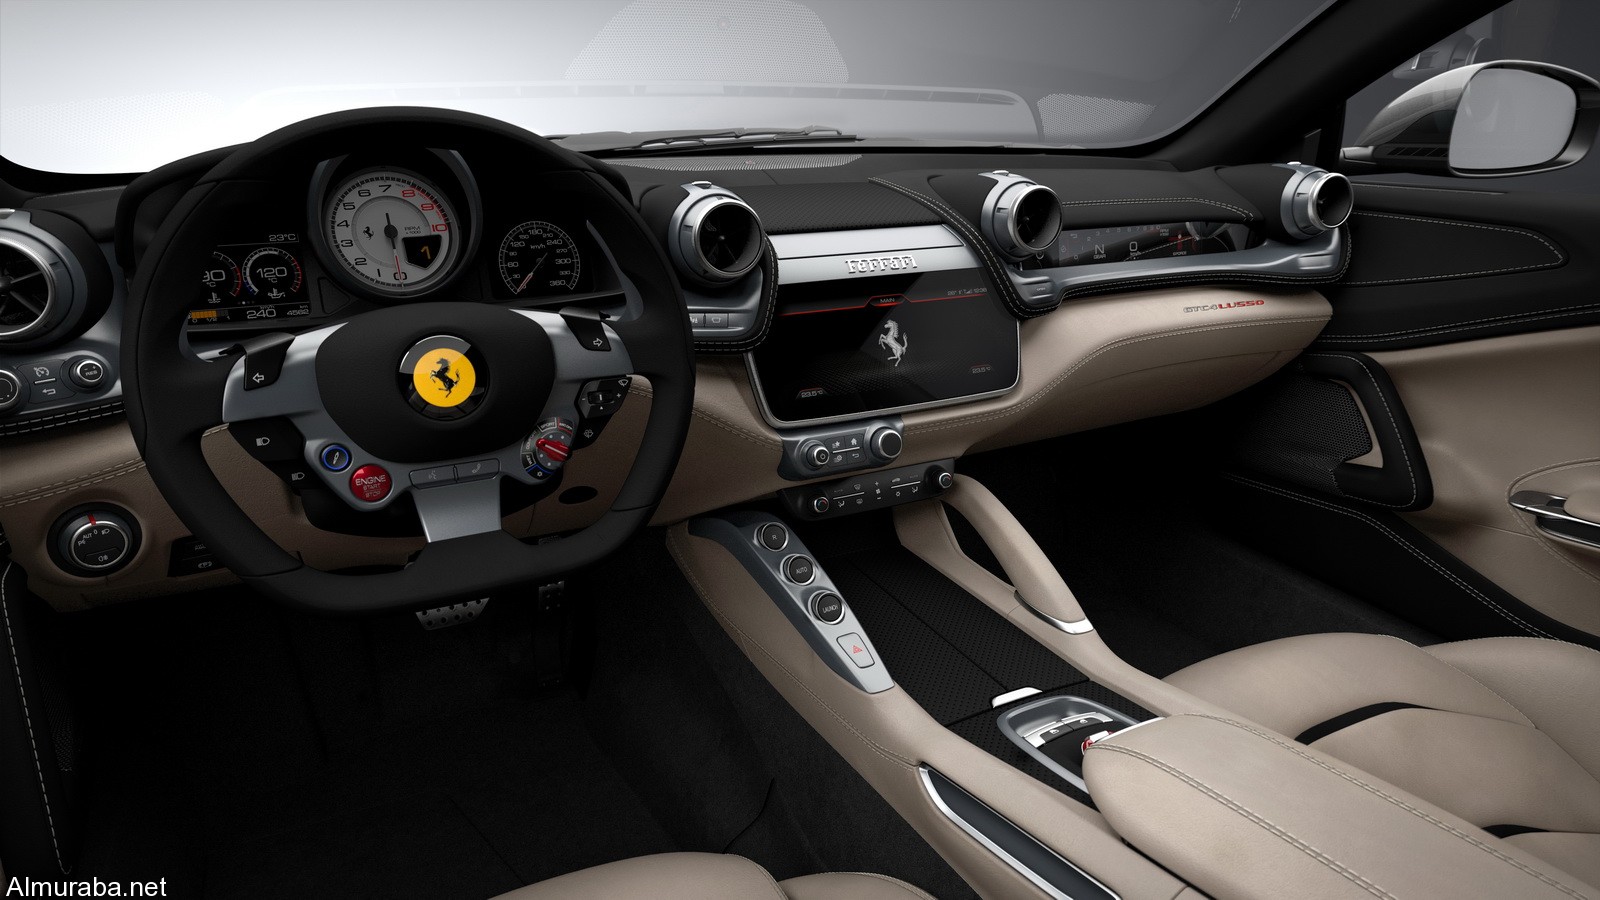 "بالصور" إطلاق فيراري جي تي سي فور GTC4 لوسو بإيطاليا Ferrari 2016 2